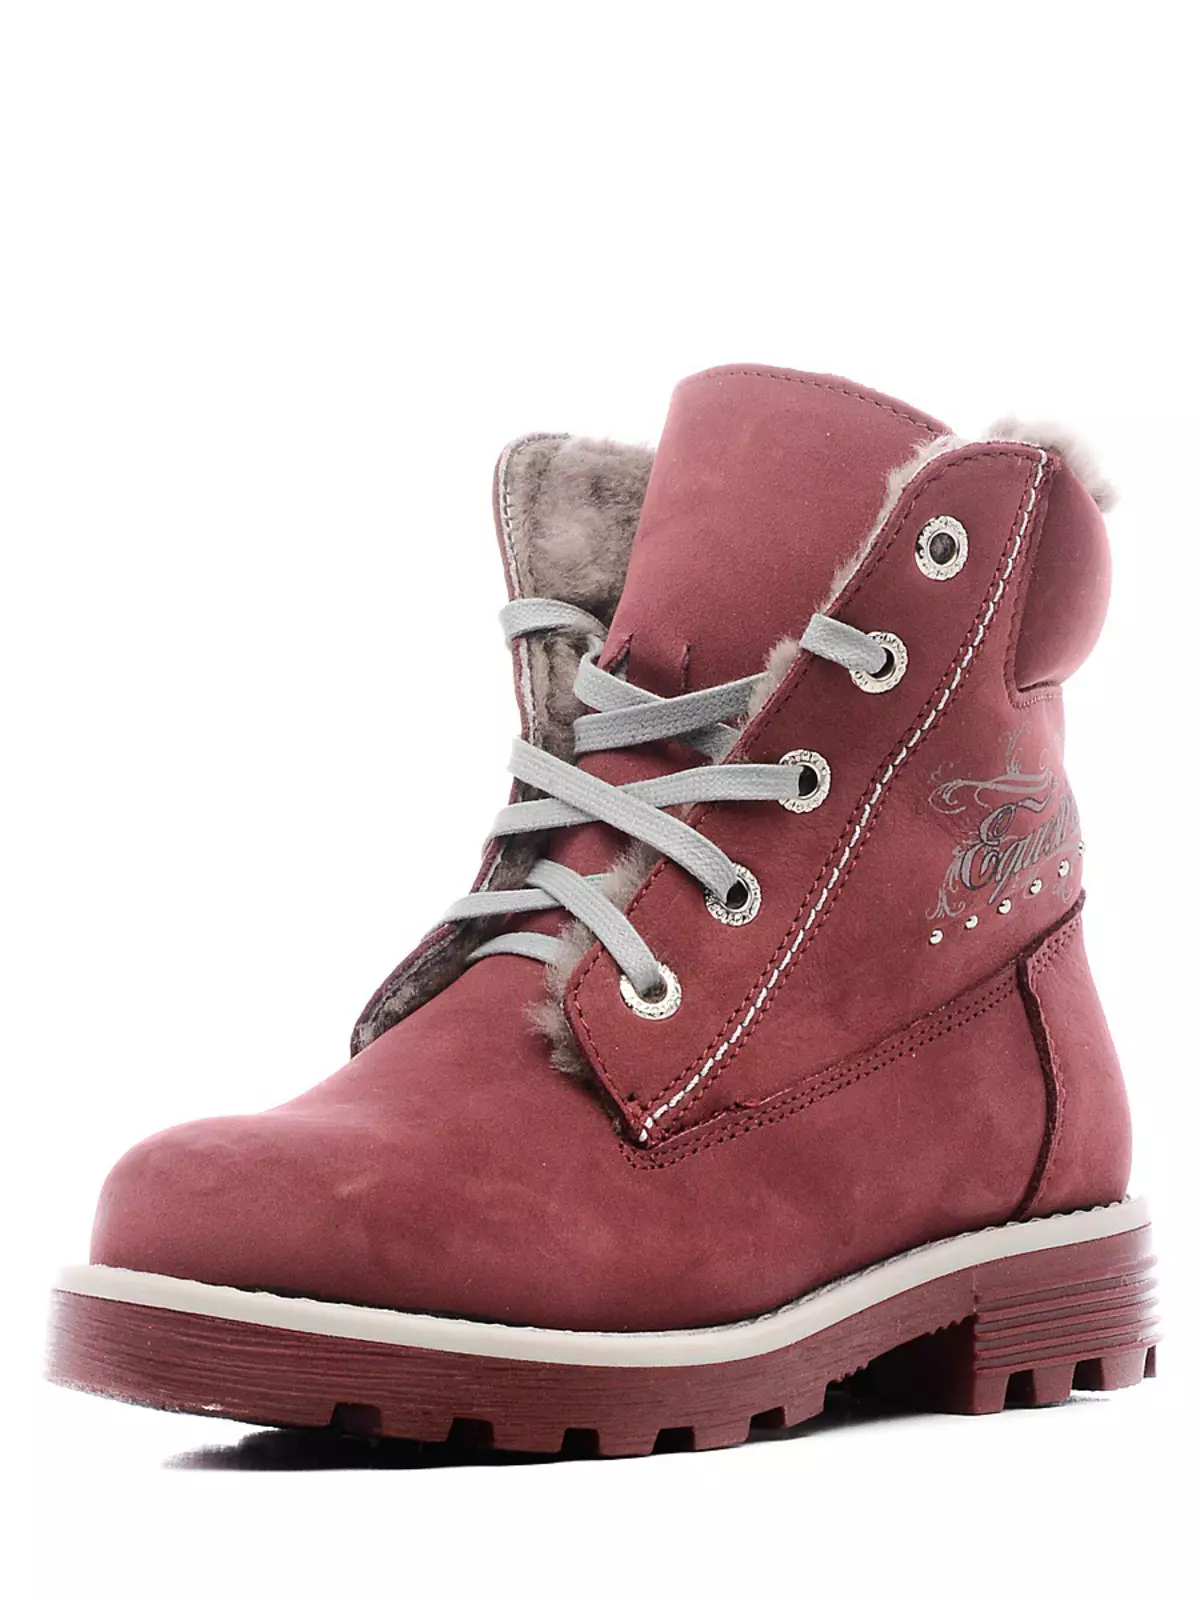 Boots sneakers (76 wêne): pêlavên zivistanê yên zivistanê yên jinê 1851_34